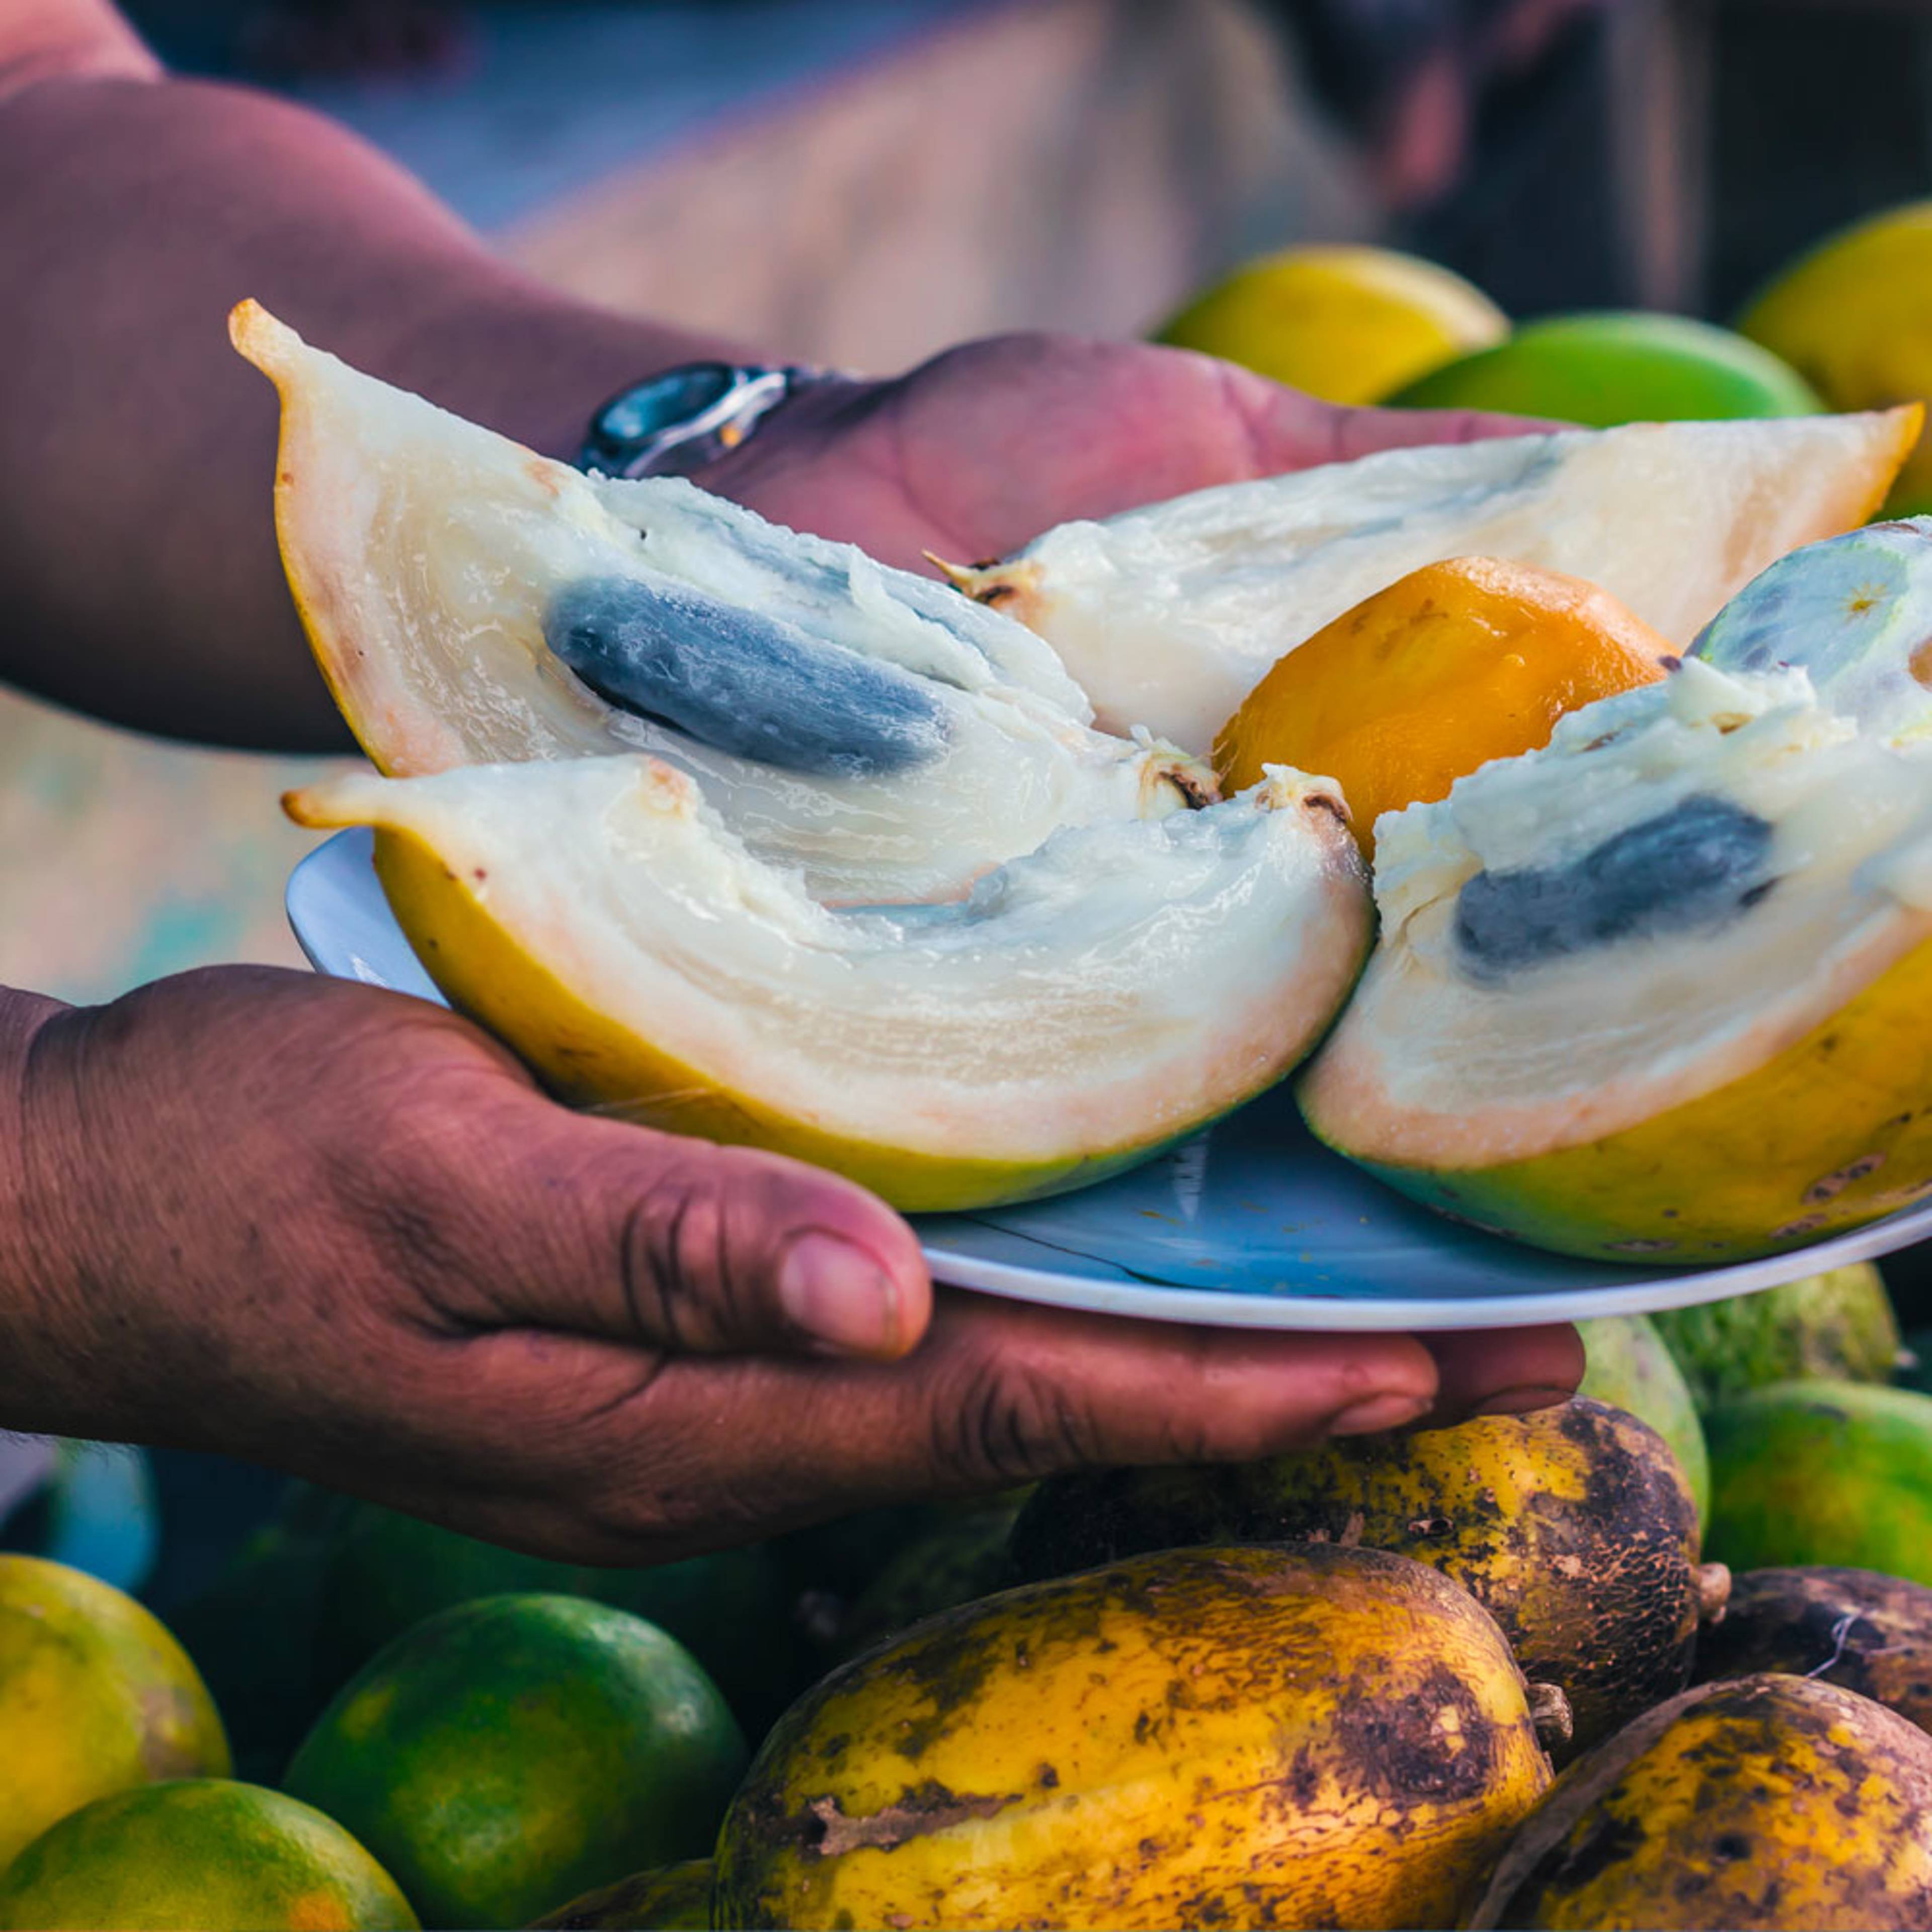 Crea tu viaje gastronómico y enológico por Perú 100% a medida